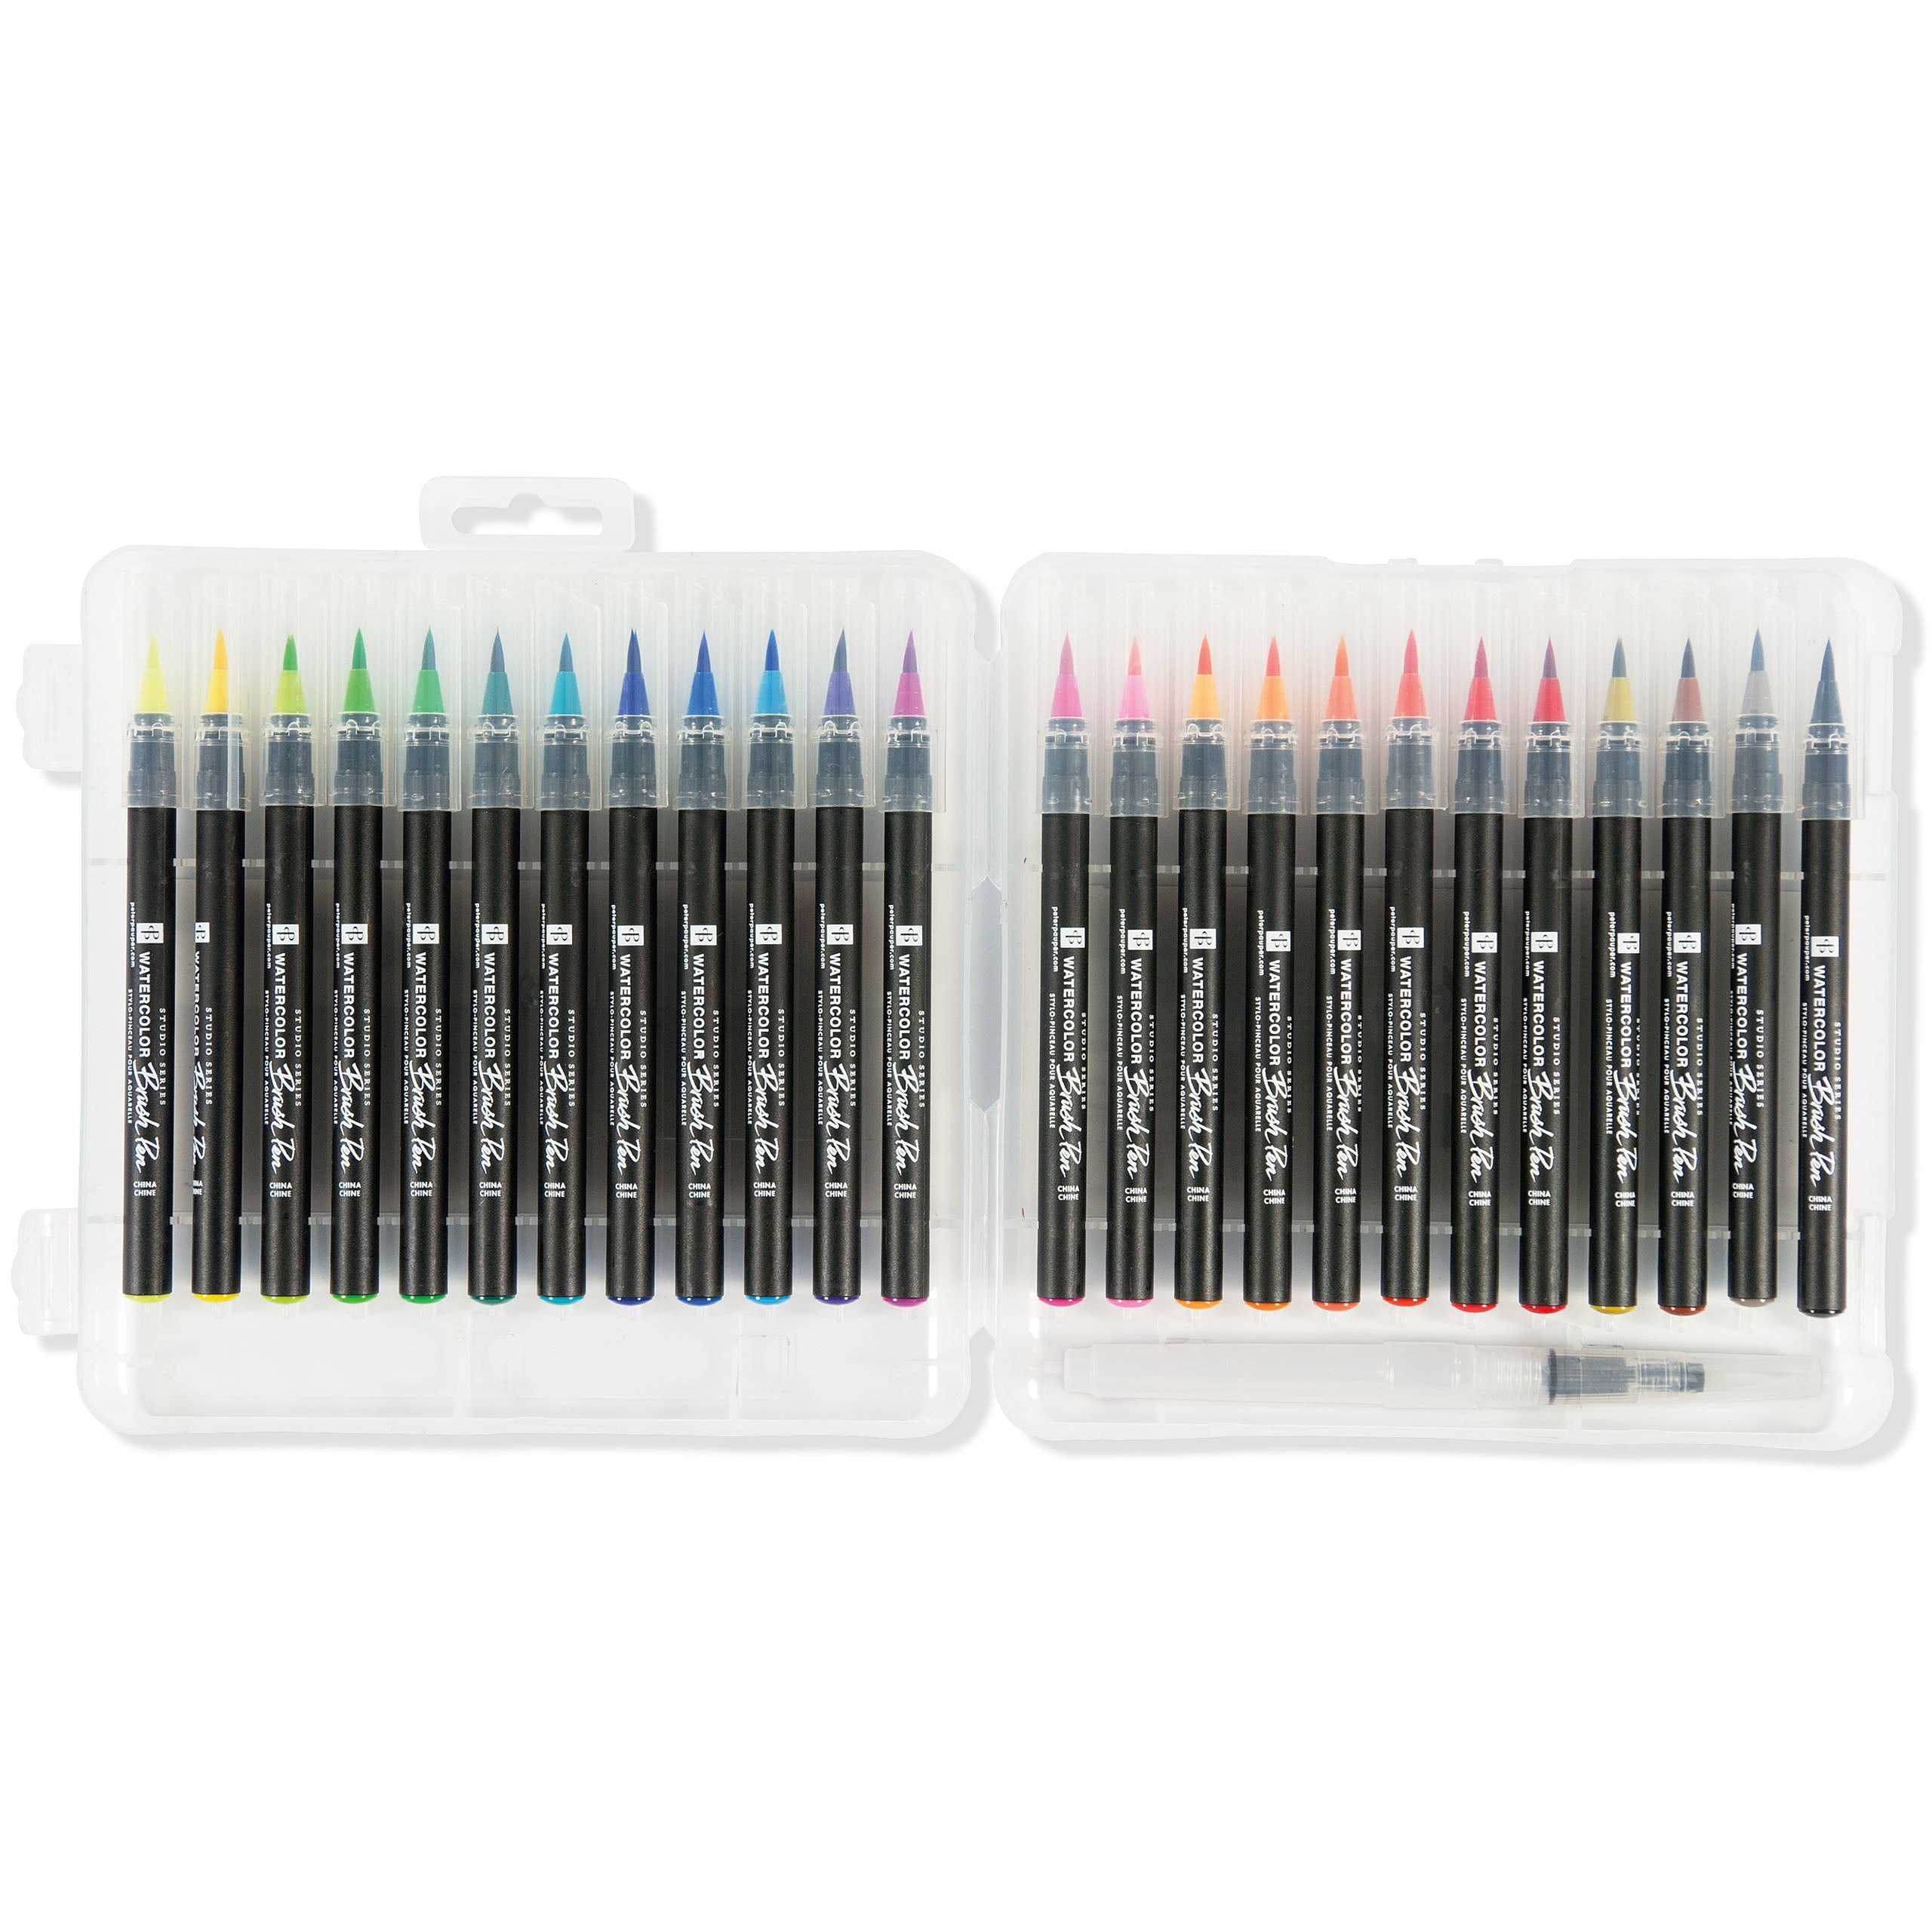 Watercolour Brush Pens - 24 Colour Set - Paper Kooka